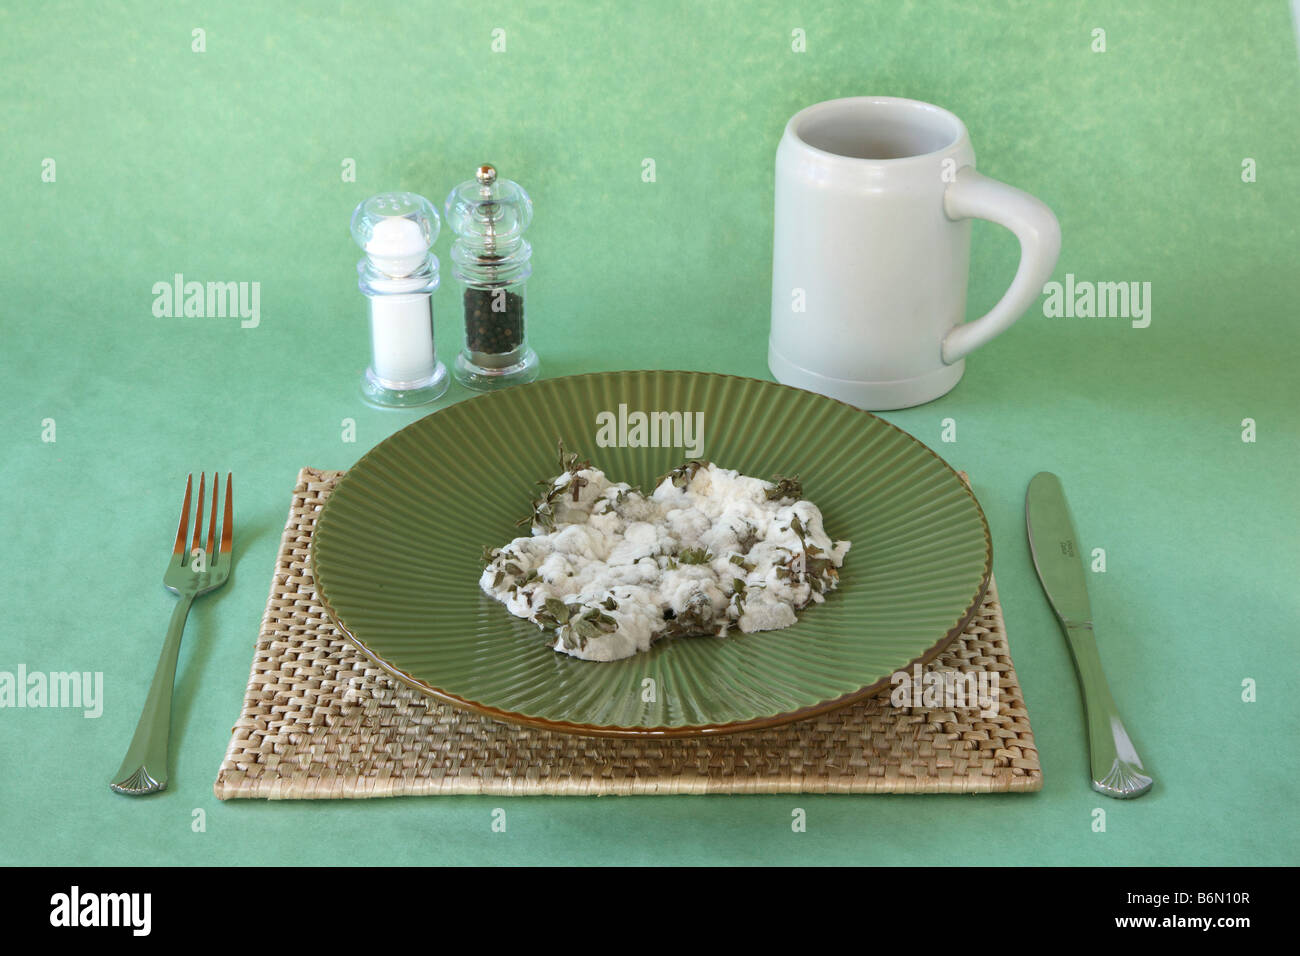 La nourriture moisie pour le dîner Photo Stock - Alamy